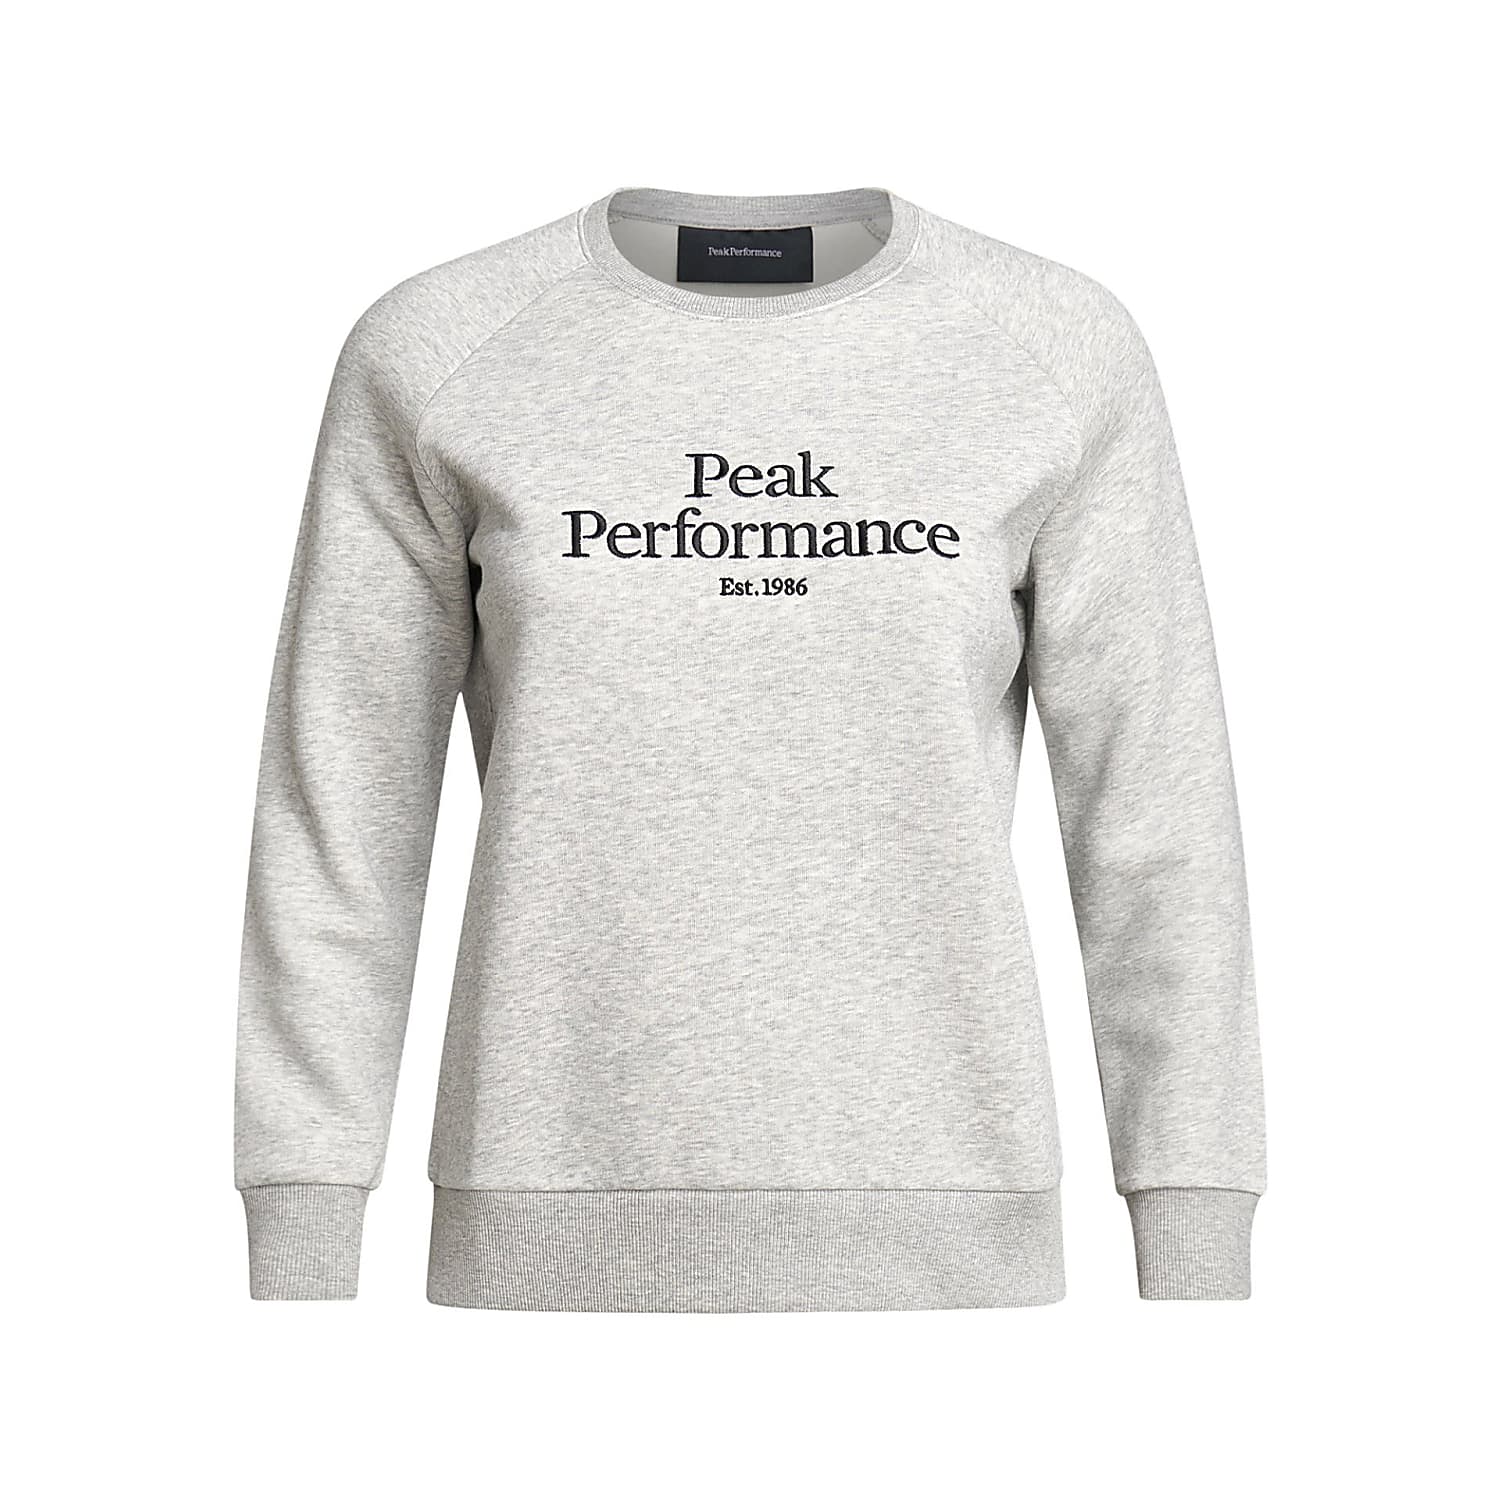 W performance. Peak Performance. Peak Performance одежда производитель. Peak Performance est 1986 футболка. Peak Performance логотип.